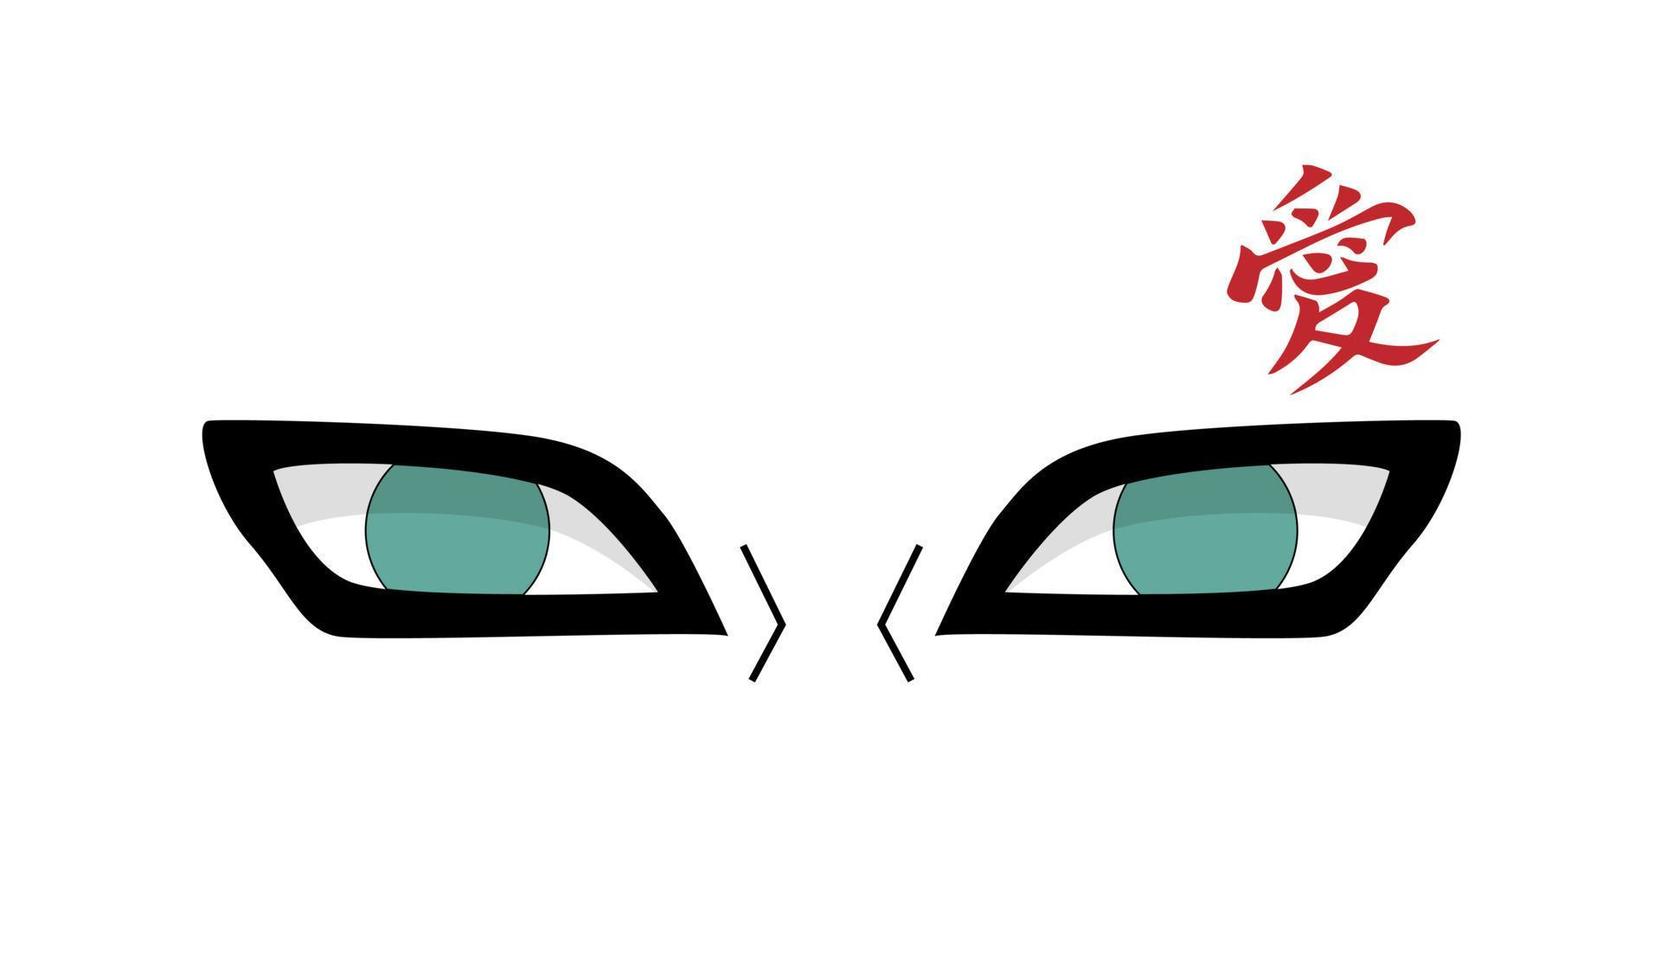 illustration graphique vectoriel des yeux de gaara, gaara est le kazekage du village de suna